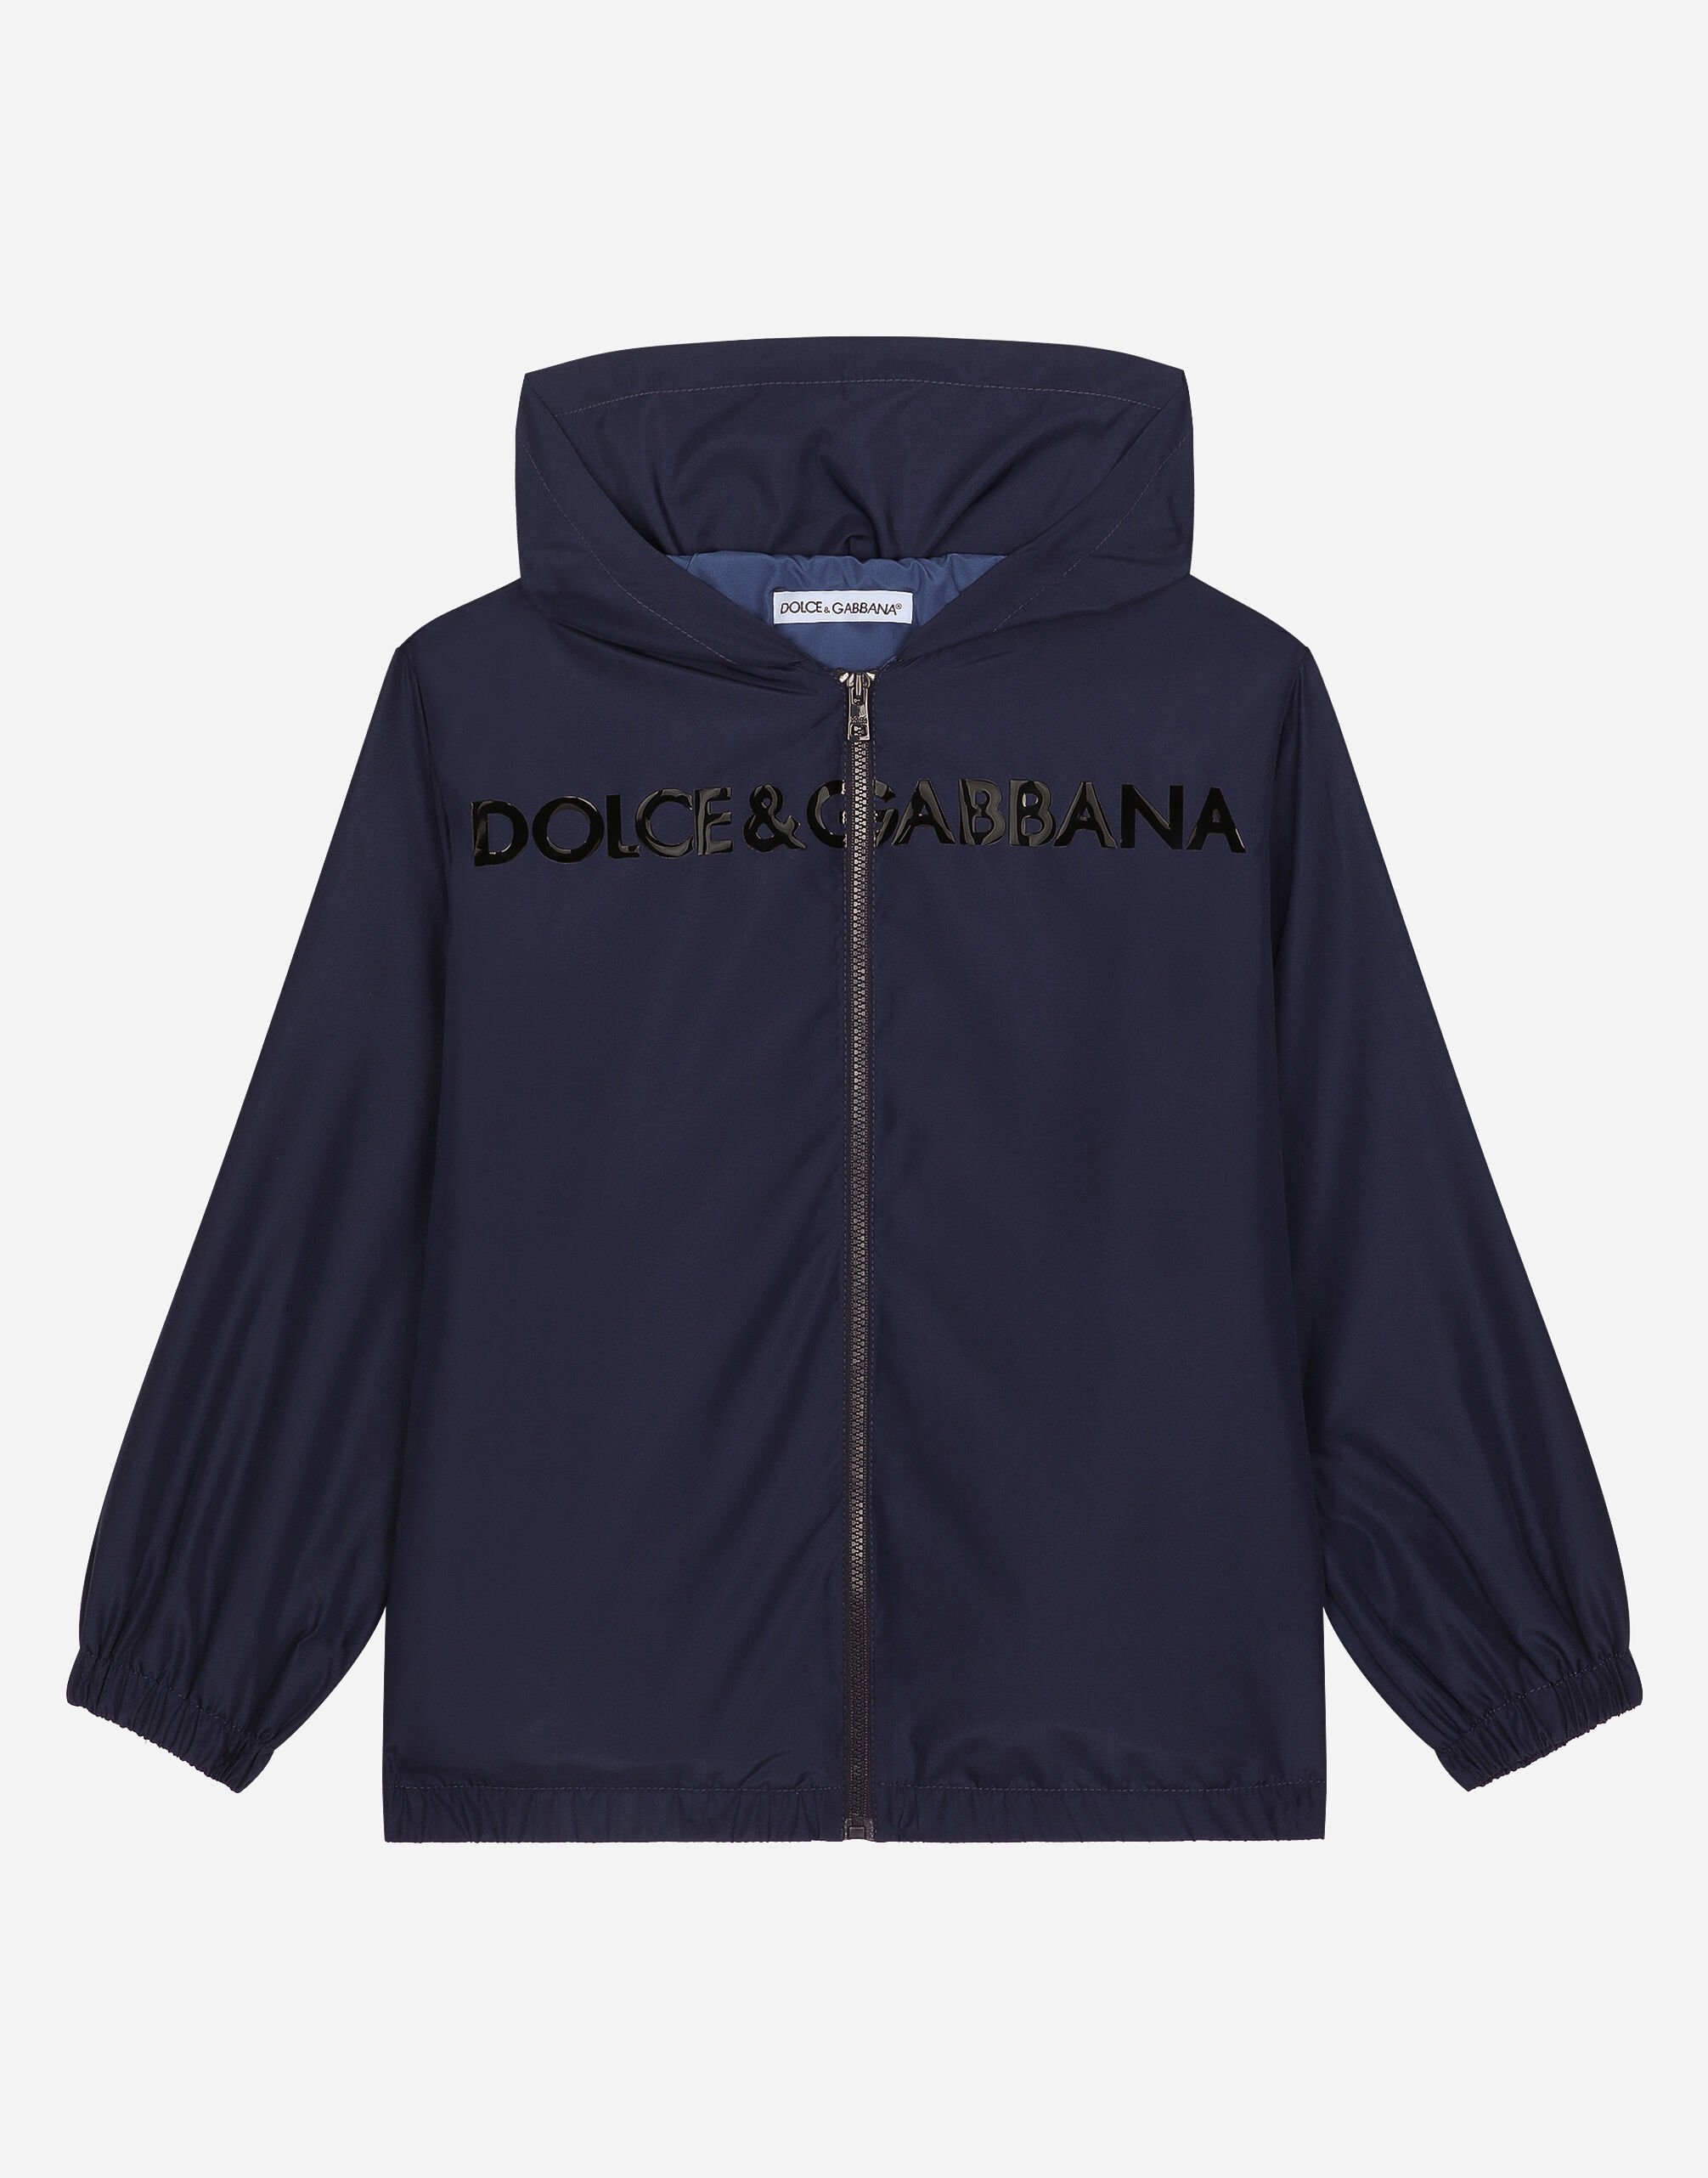 Dolce & Gabbana ウィンドブレーカー ナイロン ドルチェ＆ガッバーナロゴ ブルー L4JC28G7L2F